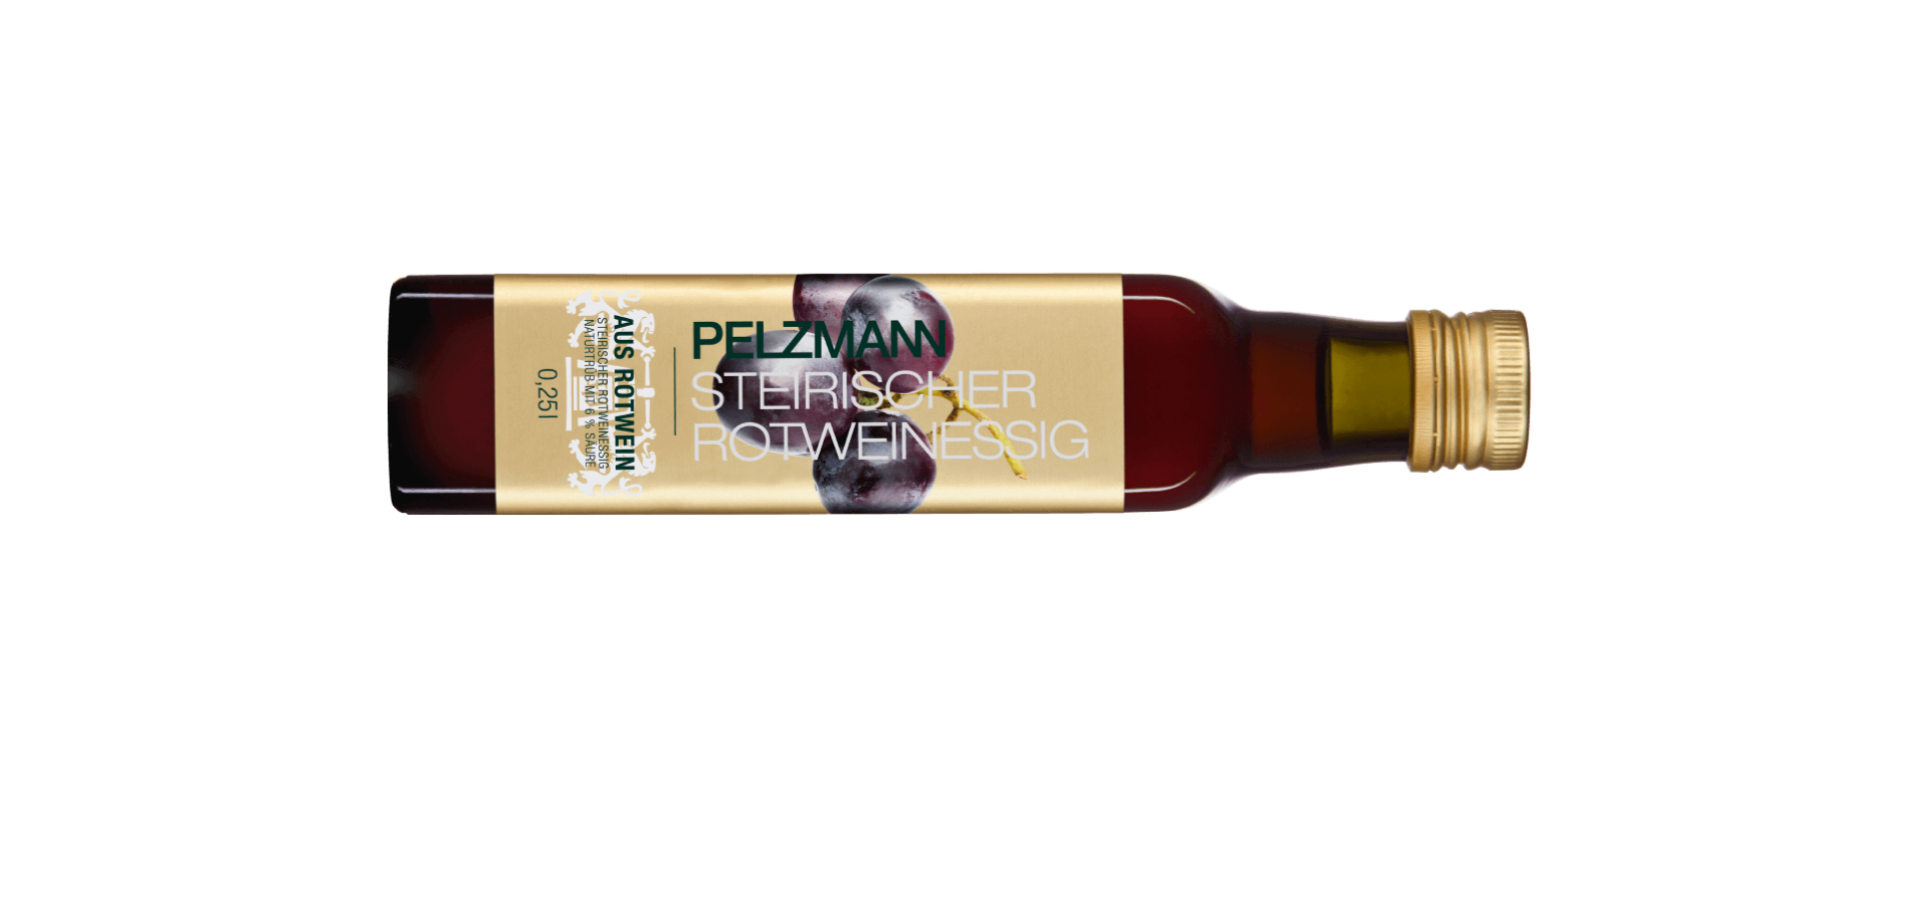 Eine Flasche Pelzmann Steirisches Rotweinessig steht zentral vor einem weißen Hintergrund. Text auf der Etikette: "PELZMANN STEIRISCHES ROTWEINESSIG AUS ROTWEIN NETTOFÜLLMENGE 0,25l".